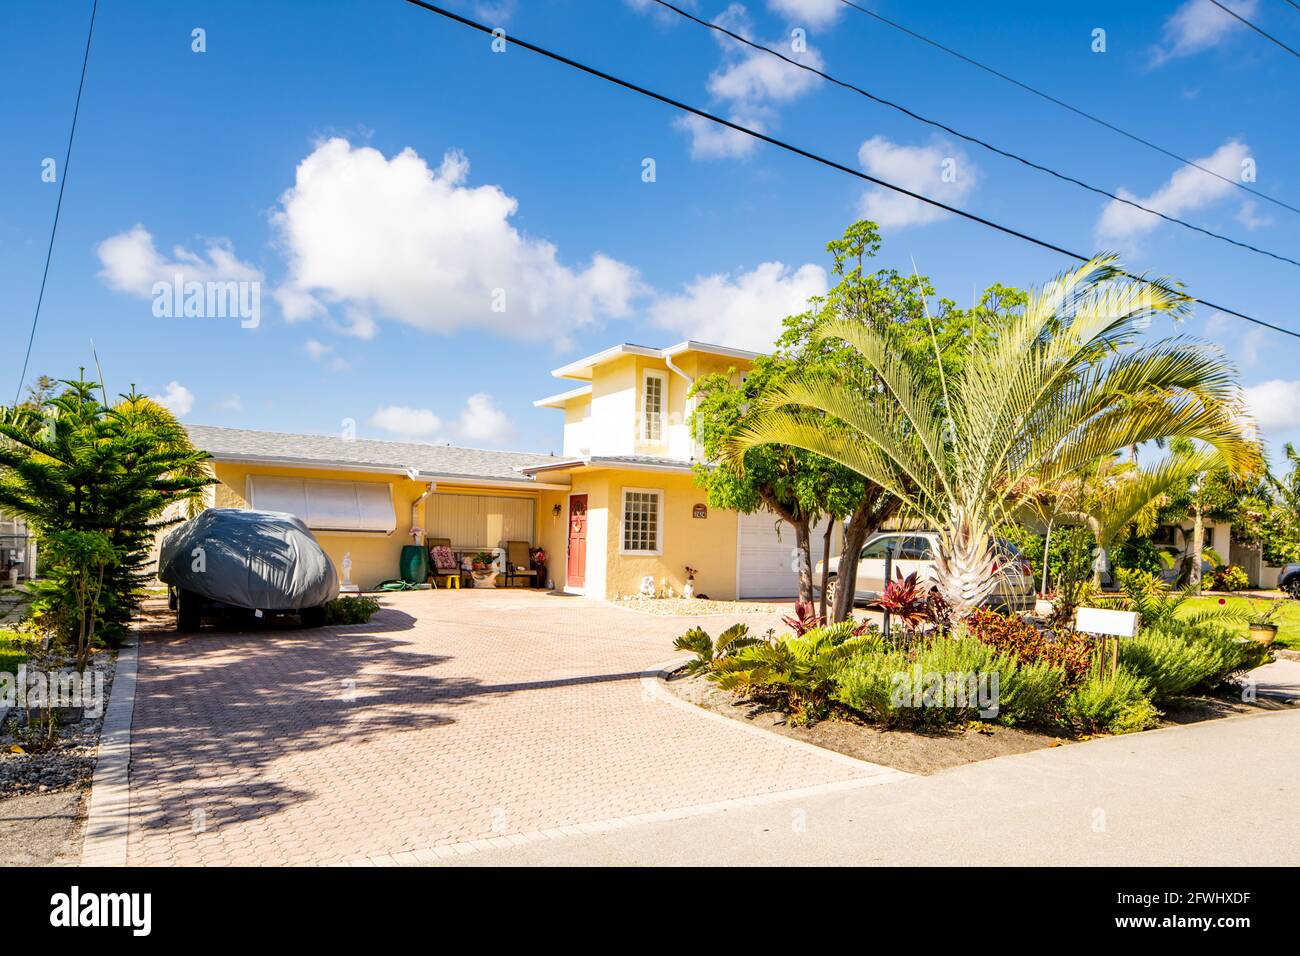 Pompano Beach, FL, USA - May 22, 2021: Single family house in Pompano Beach Florida USA Stock Photo